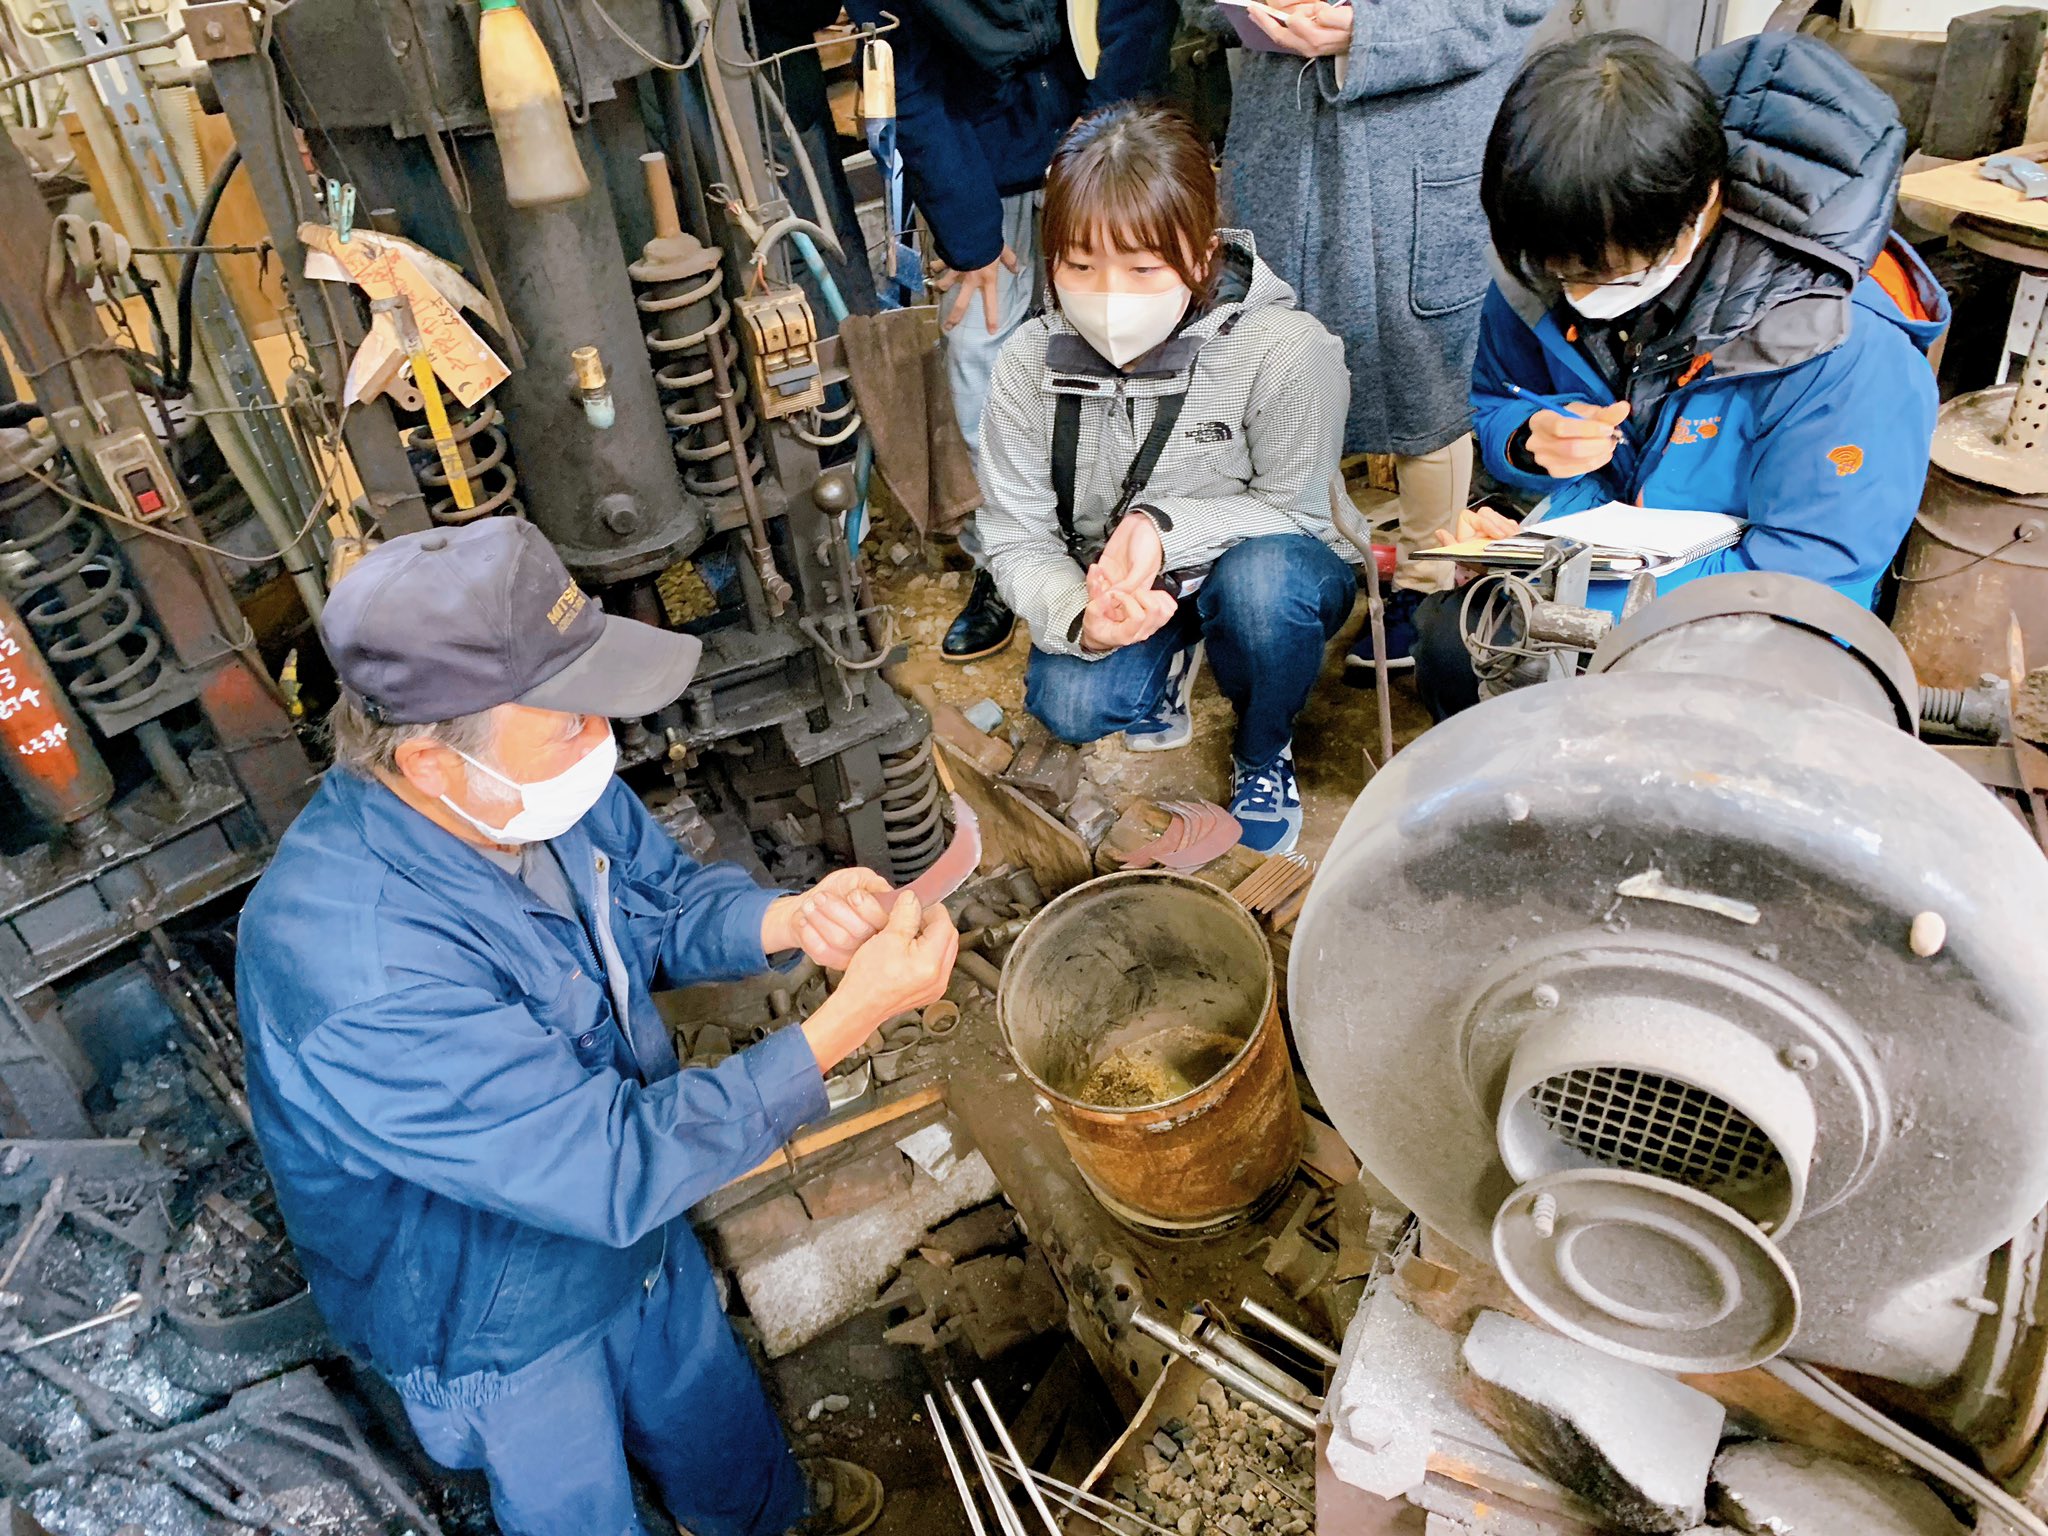 石田打刃物製作所で打刃物の製作を参加者が見学している様子